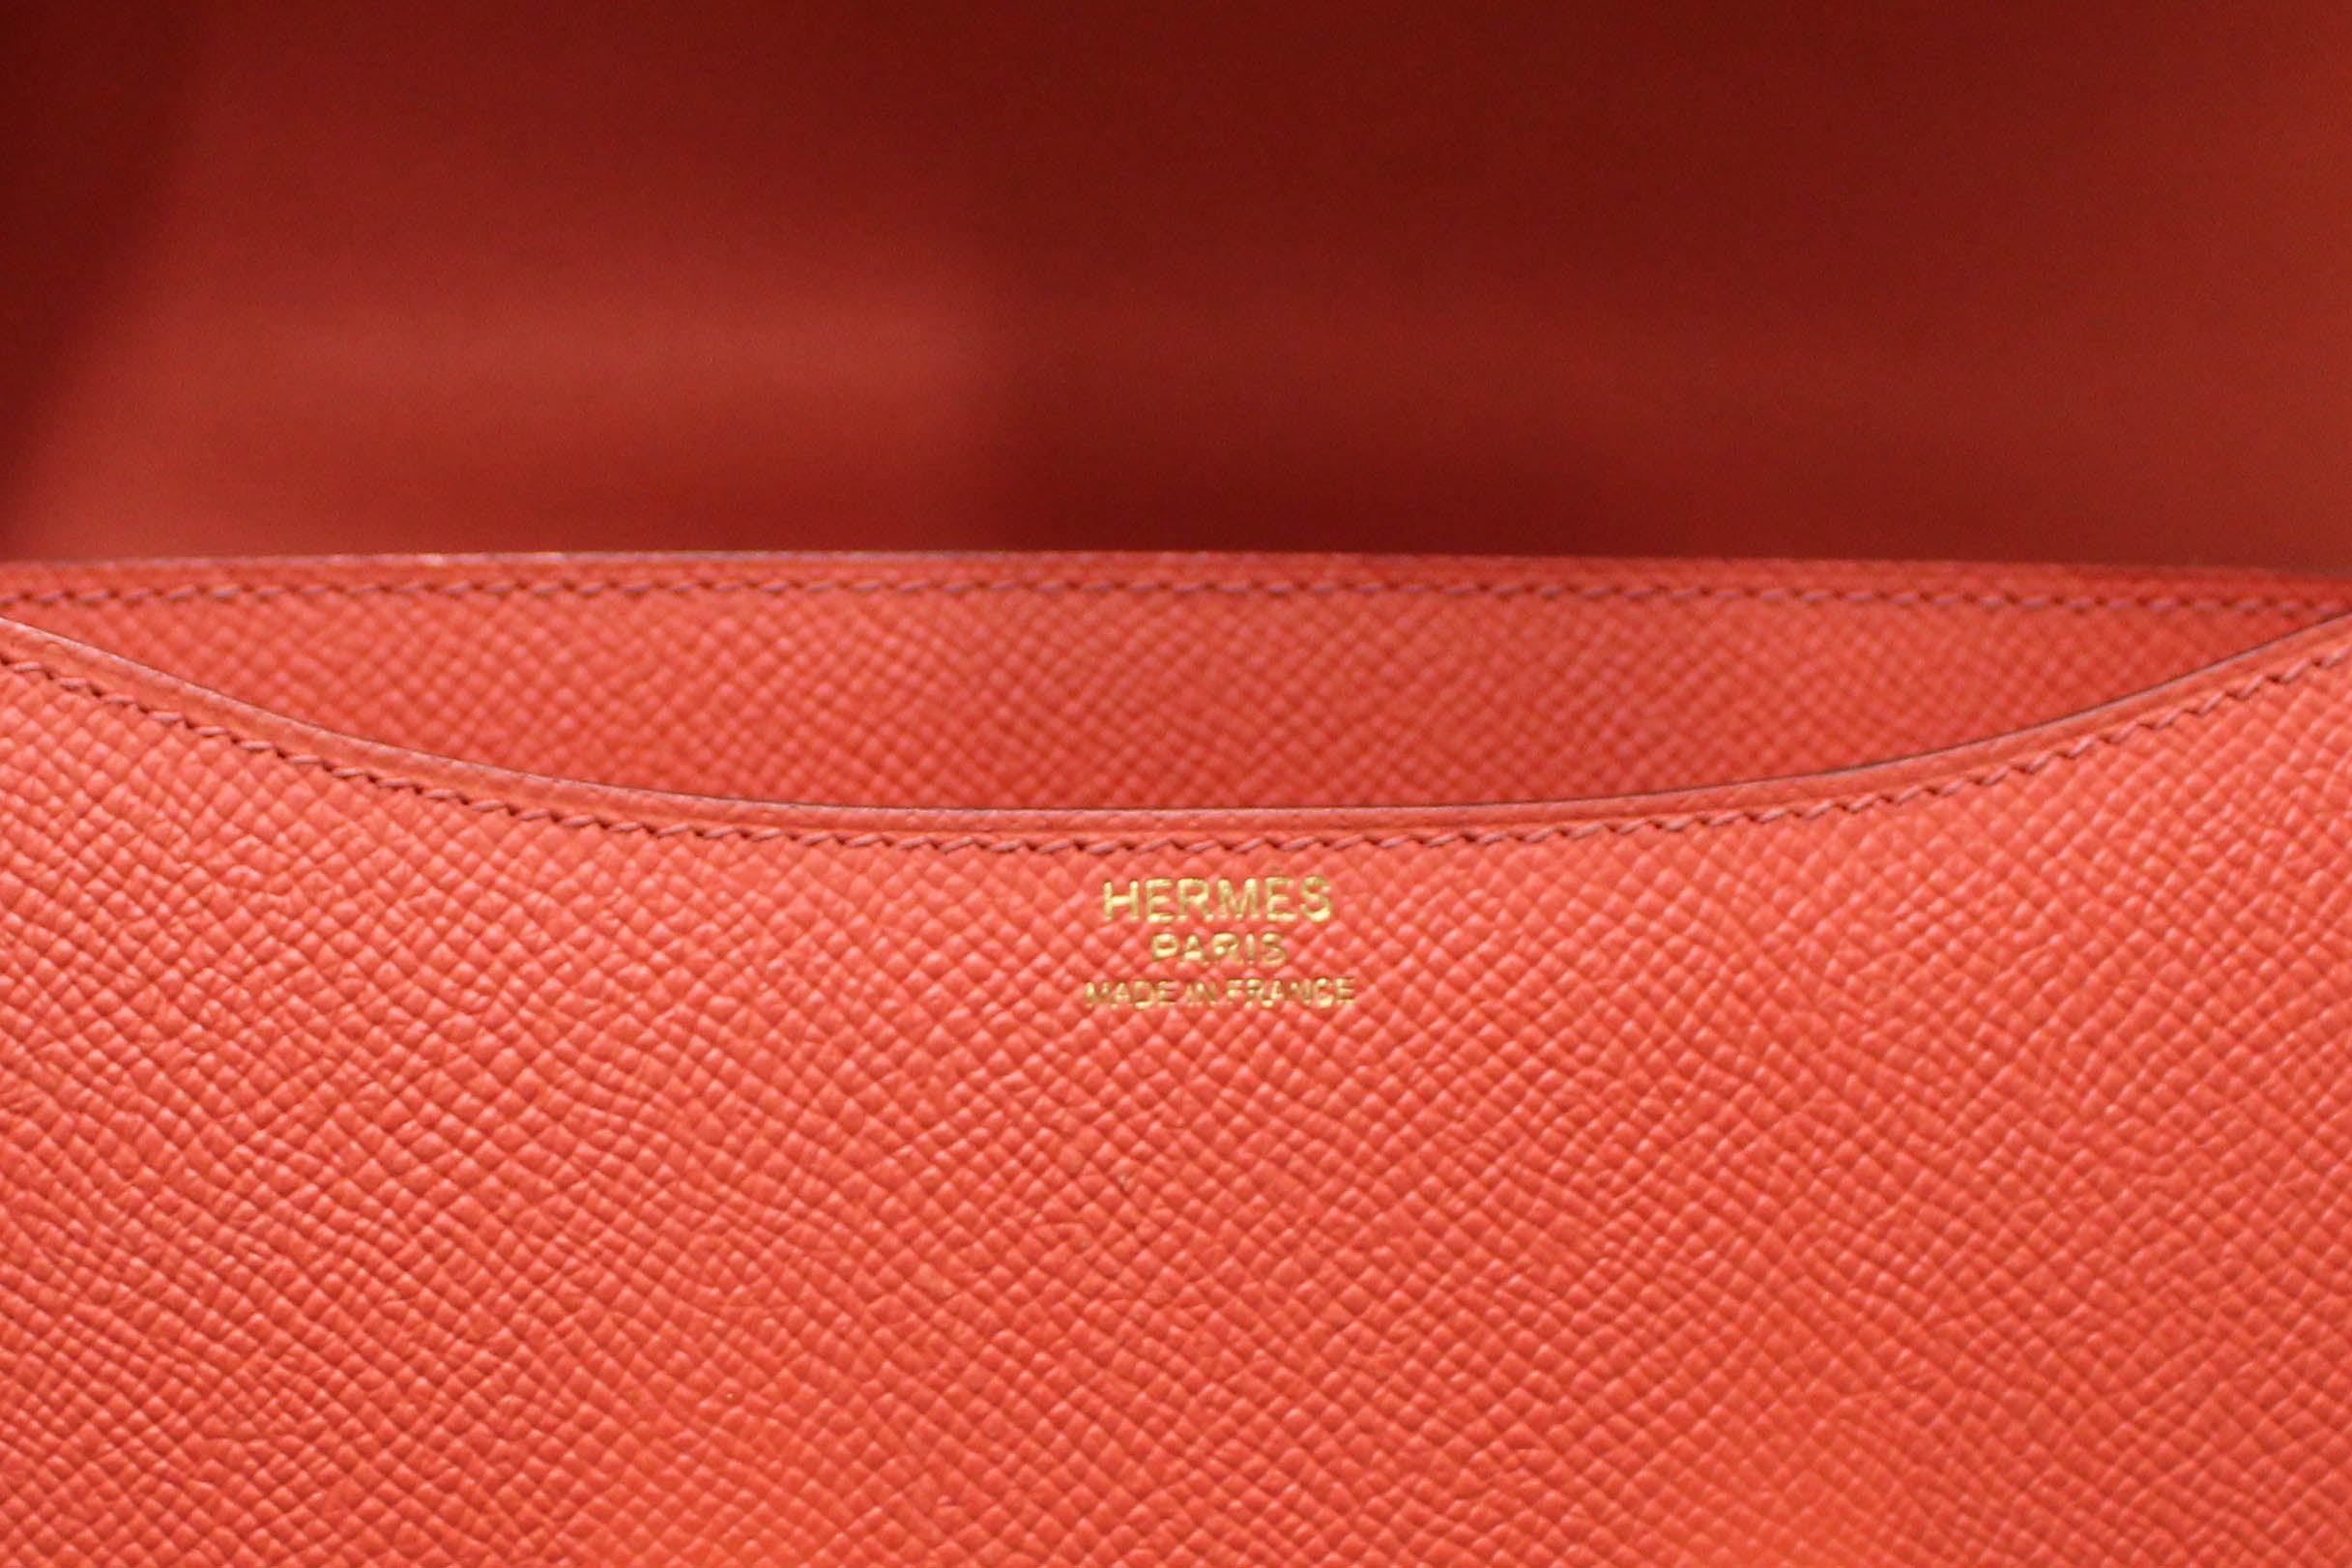 Authentic Hermes Tomate Orange Epsom Leather Constance 24 Shoulder Bag